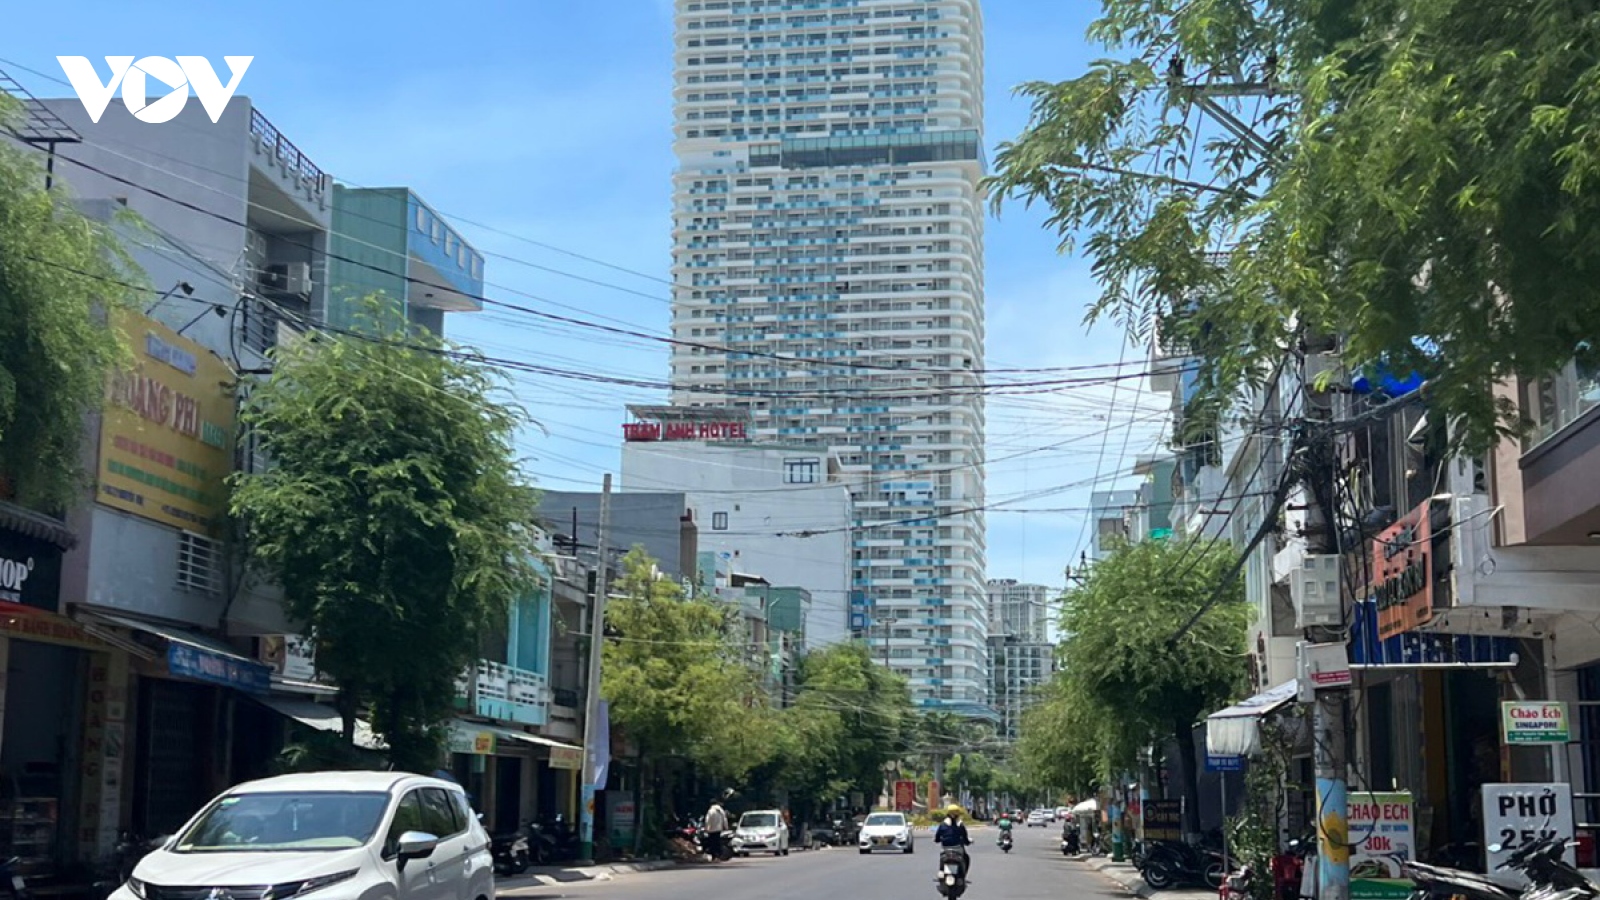 Bình Định chỉ đạo quản lý, sử dụng đúng quy định nhà cao tầng ở TP Qui Nhơn